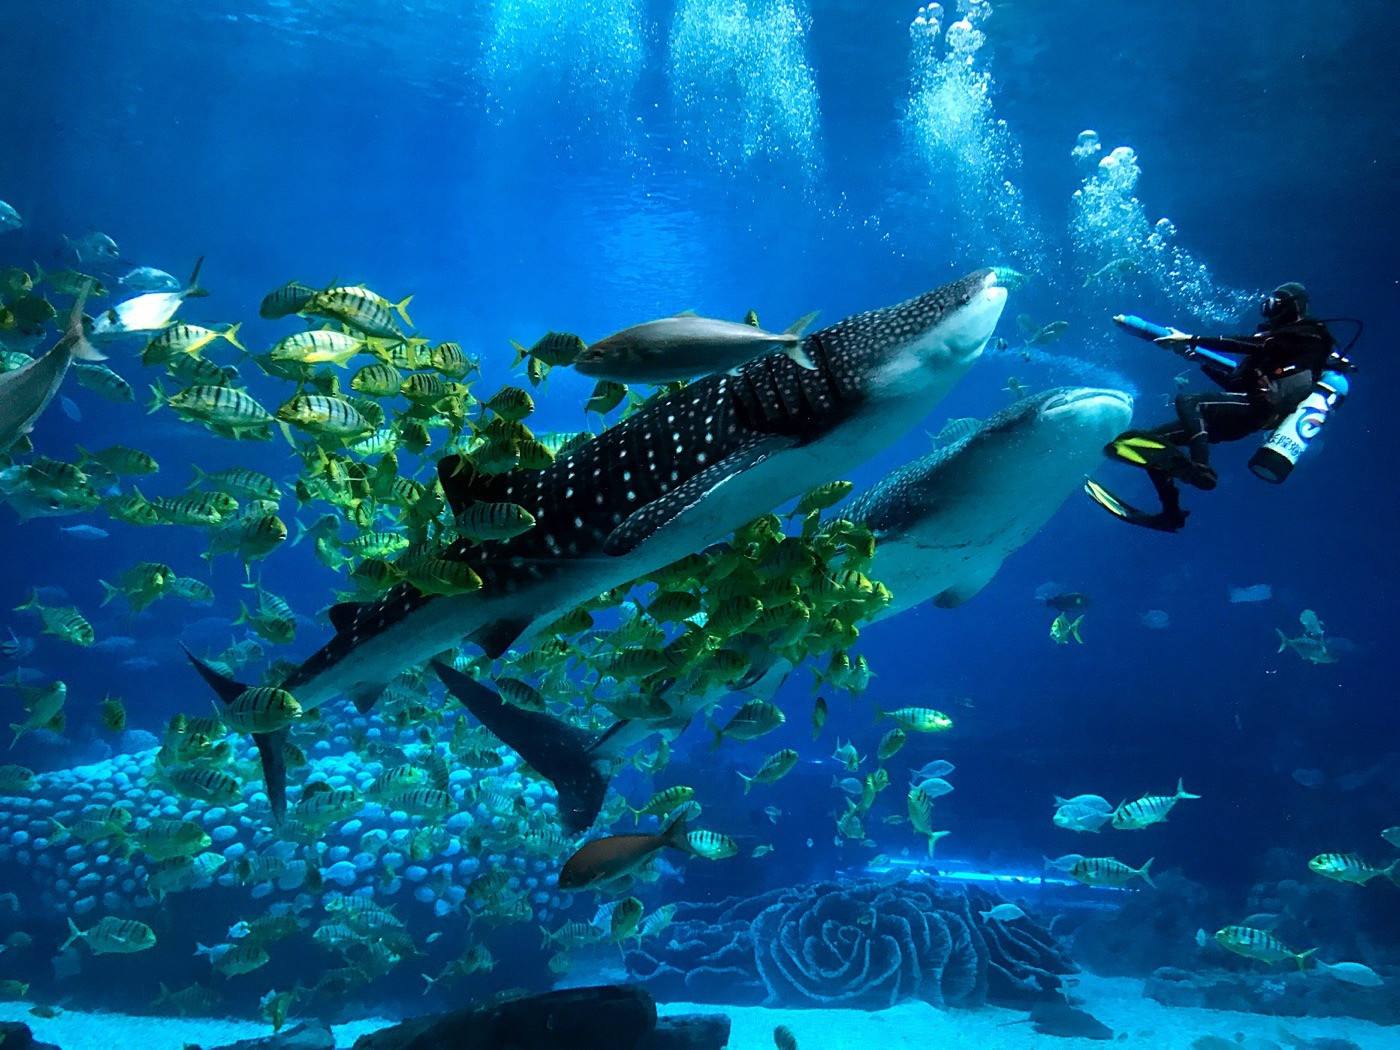 珠海长隆海洋王国,全球较大的海洋主题公园,令人震撼的视觉盛宴